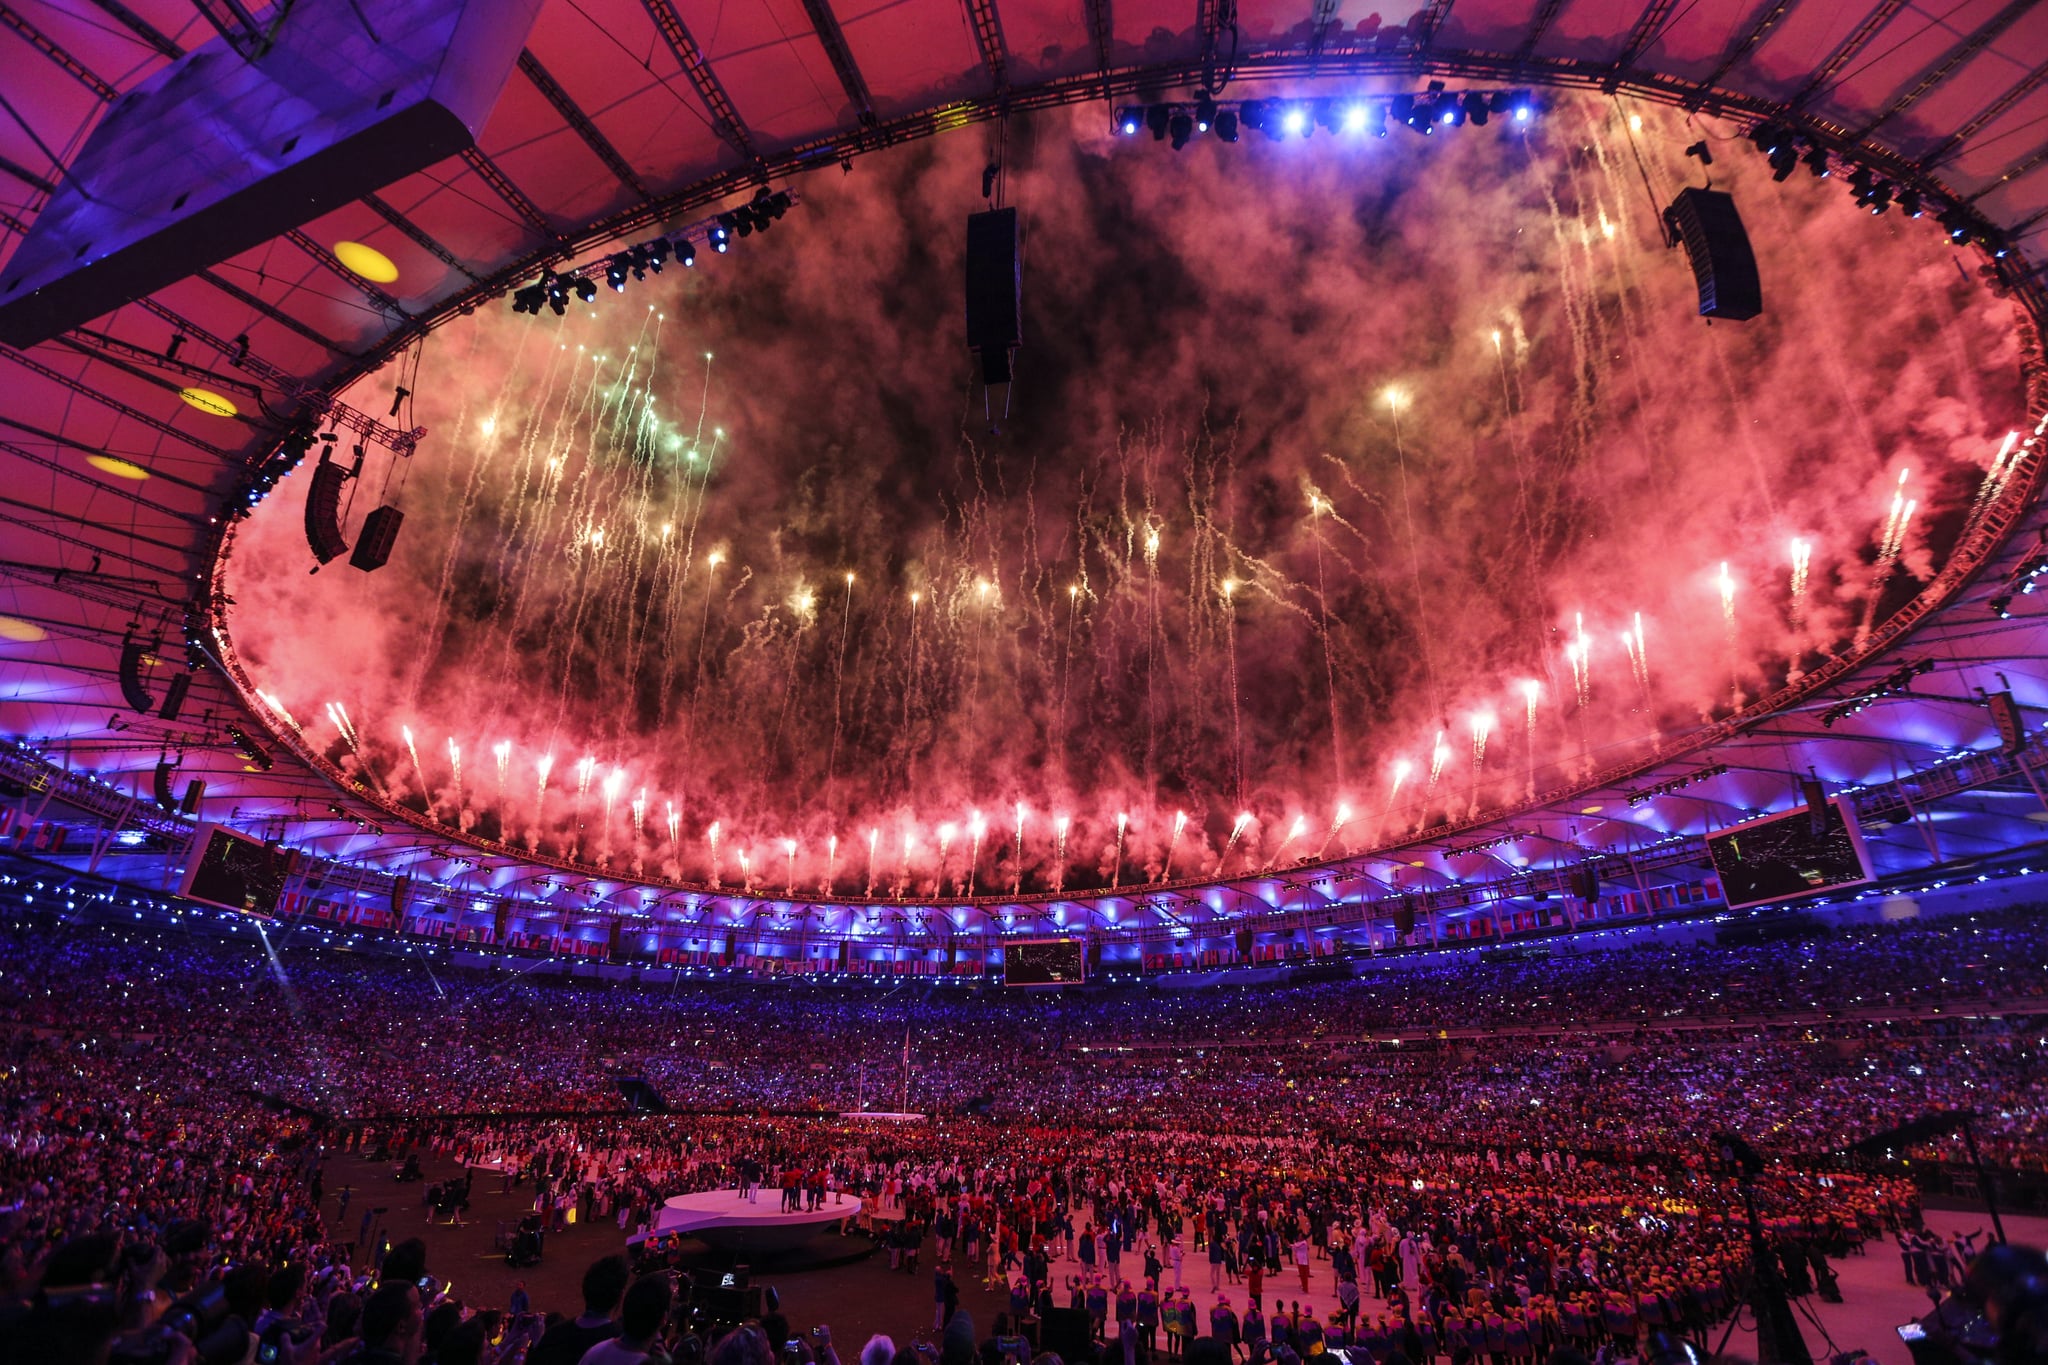 ریو د ژانیرو ، برزیل - 05 آگوست: آتش بازی و نمایش لیزر در مراسم افتتاحیه بازی های المپیک 2016 ریو در ورزشگاه ماراکانا در ریودوژانیرو ، برزیل در تاریخ 05 اوت 2016 انجام می شود. (عکس توسط Okan Özer / Anadolu Agency / گتی ایماژ)